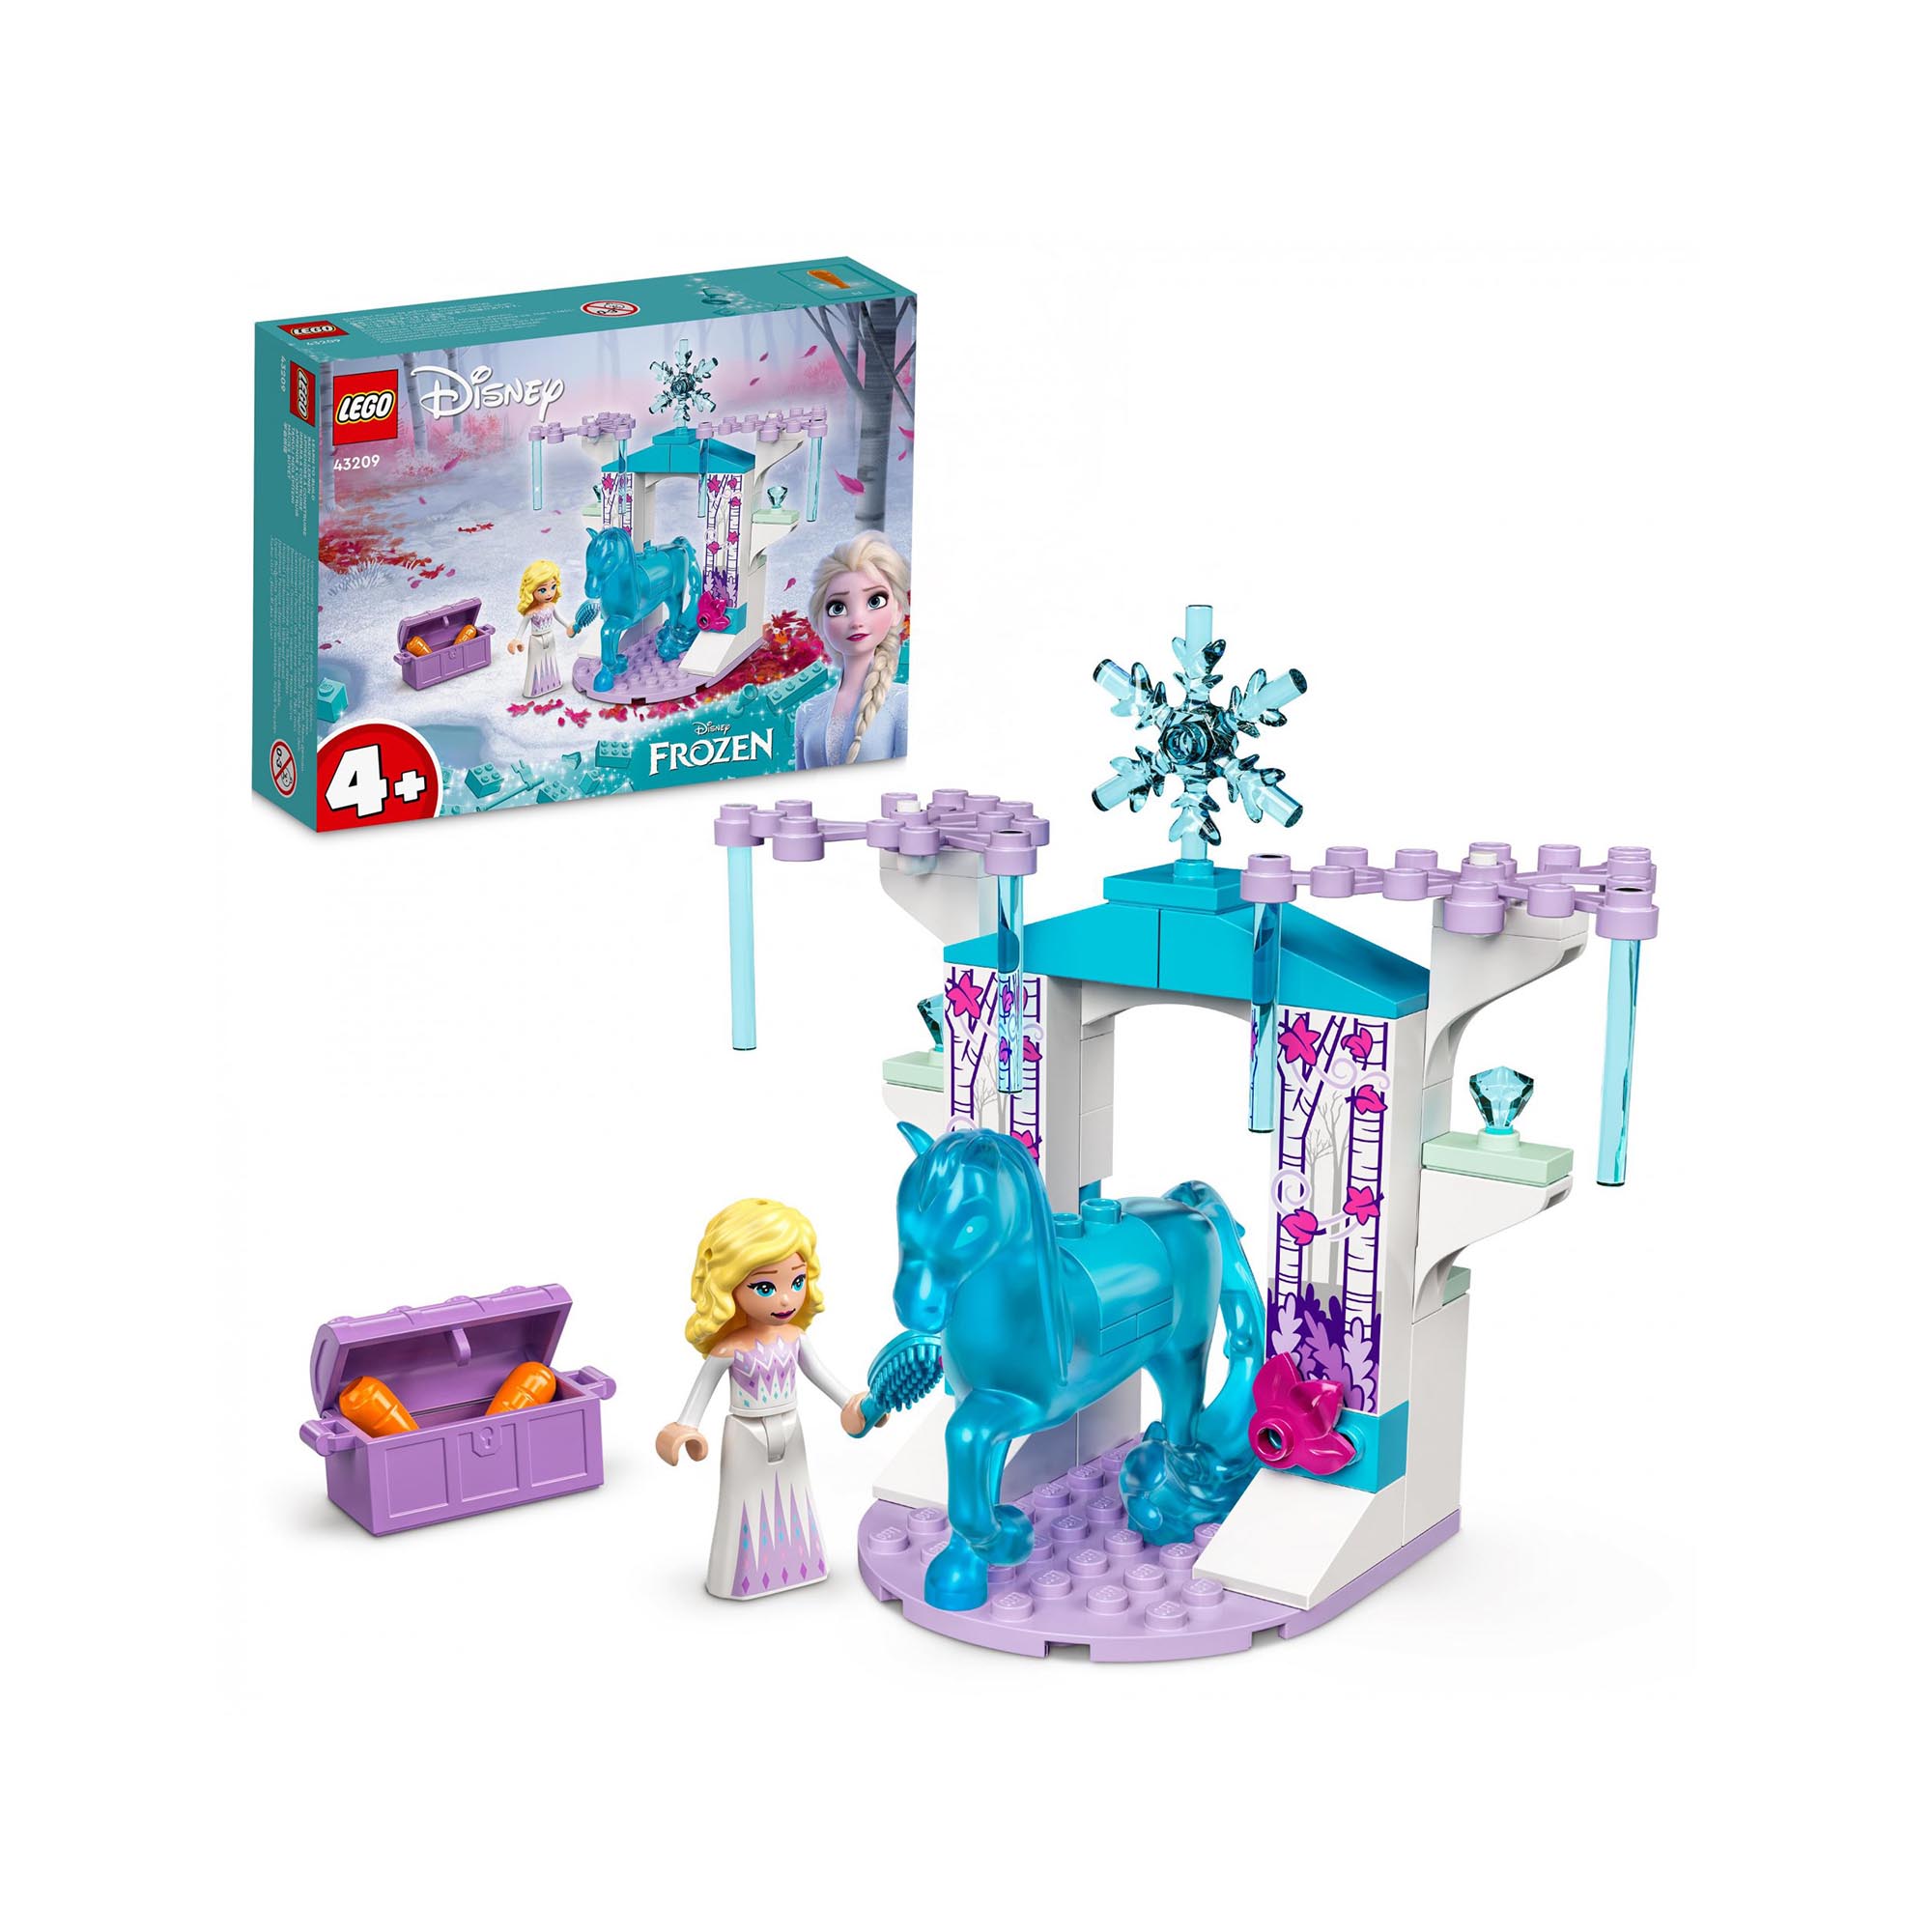 LEGO 43209 Disney Elsa e La Stalla Di Ghiaccio Di Nokk, Idea Regalo per Bambini  43209, , large